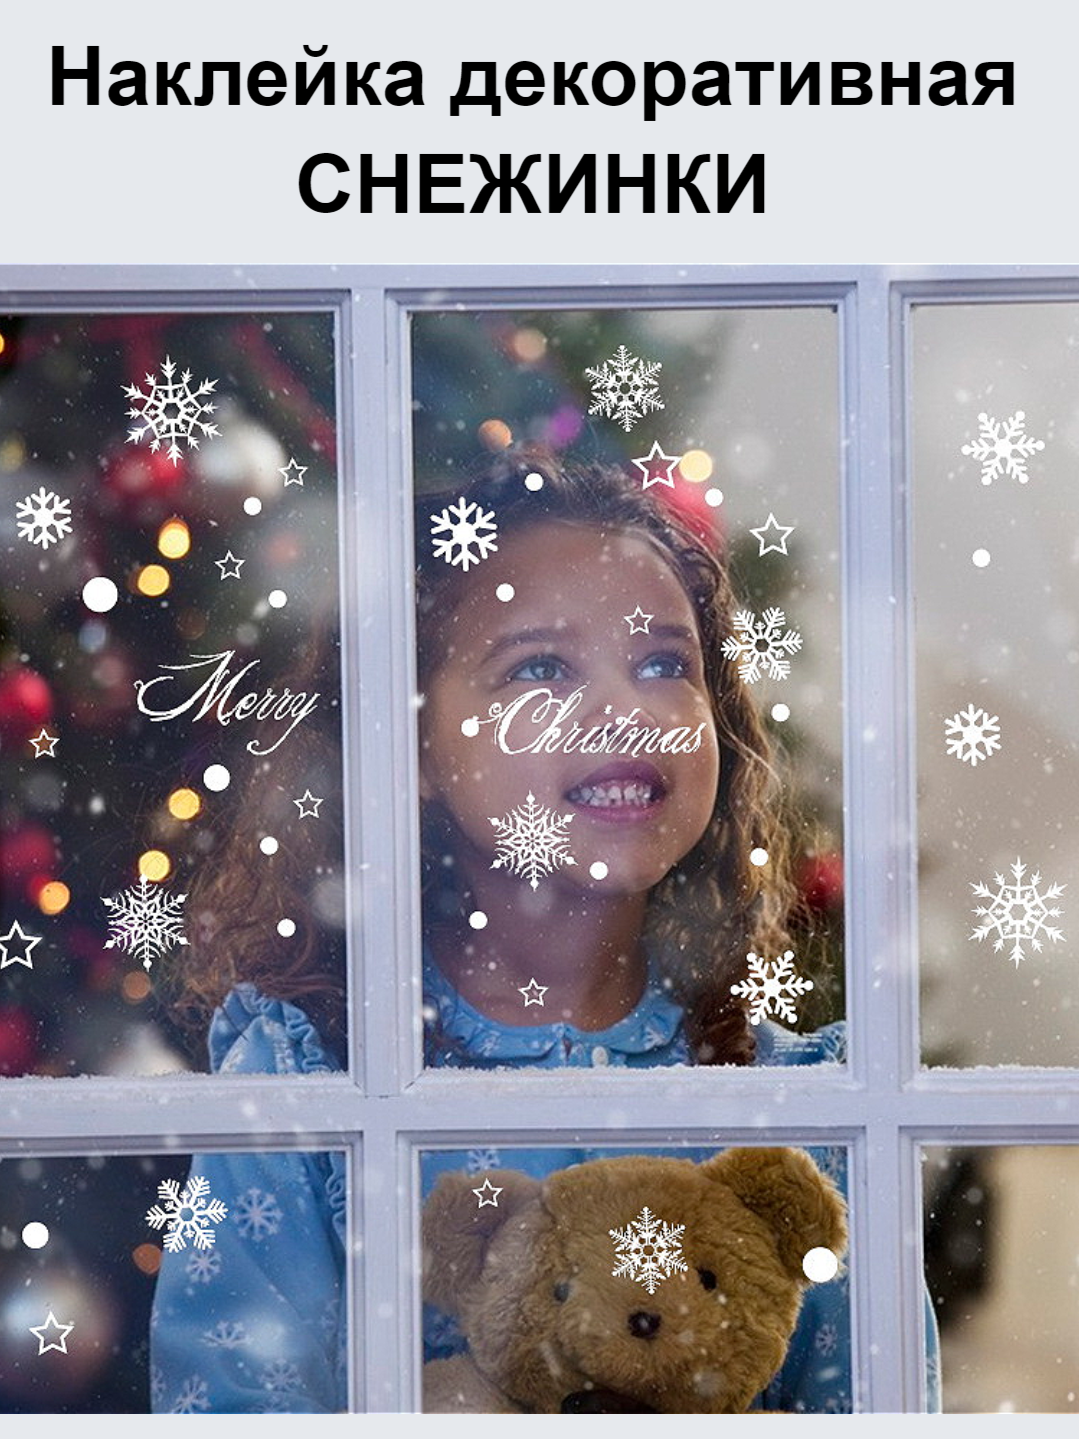 Наклейки Снежинки на окна и стены - декоративные новогодние наклейки белые для интерьера дома